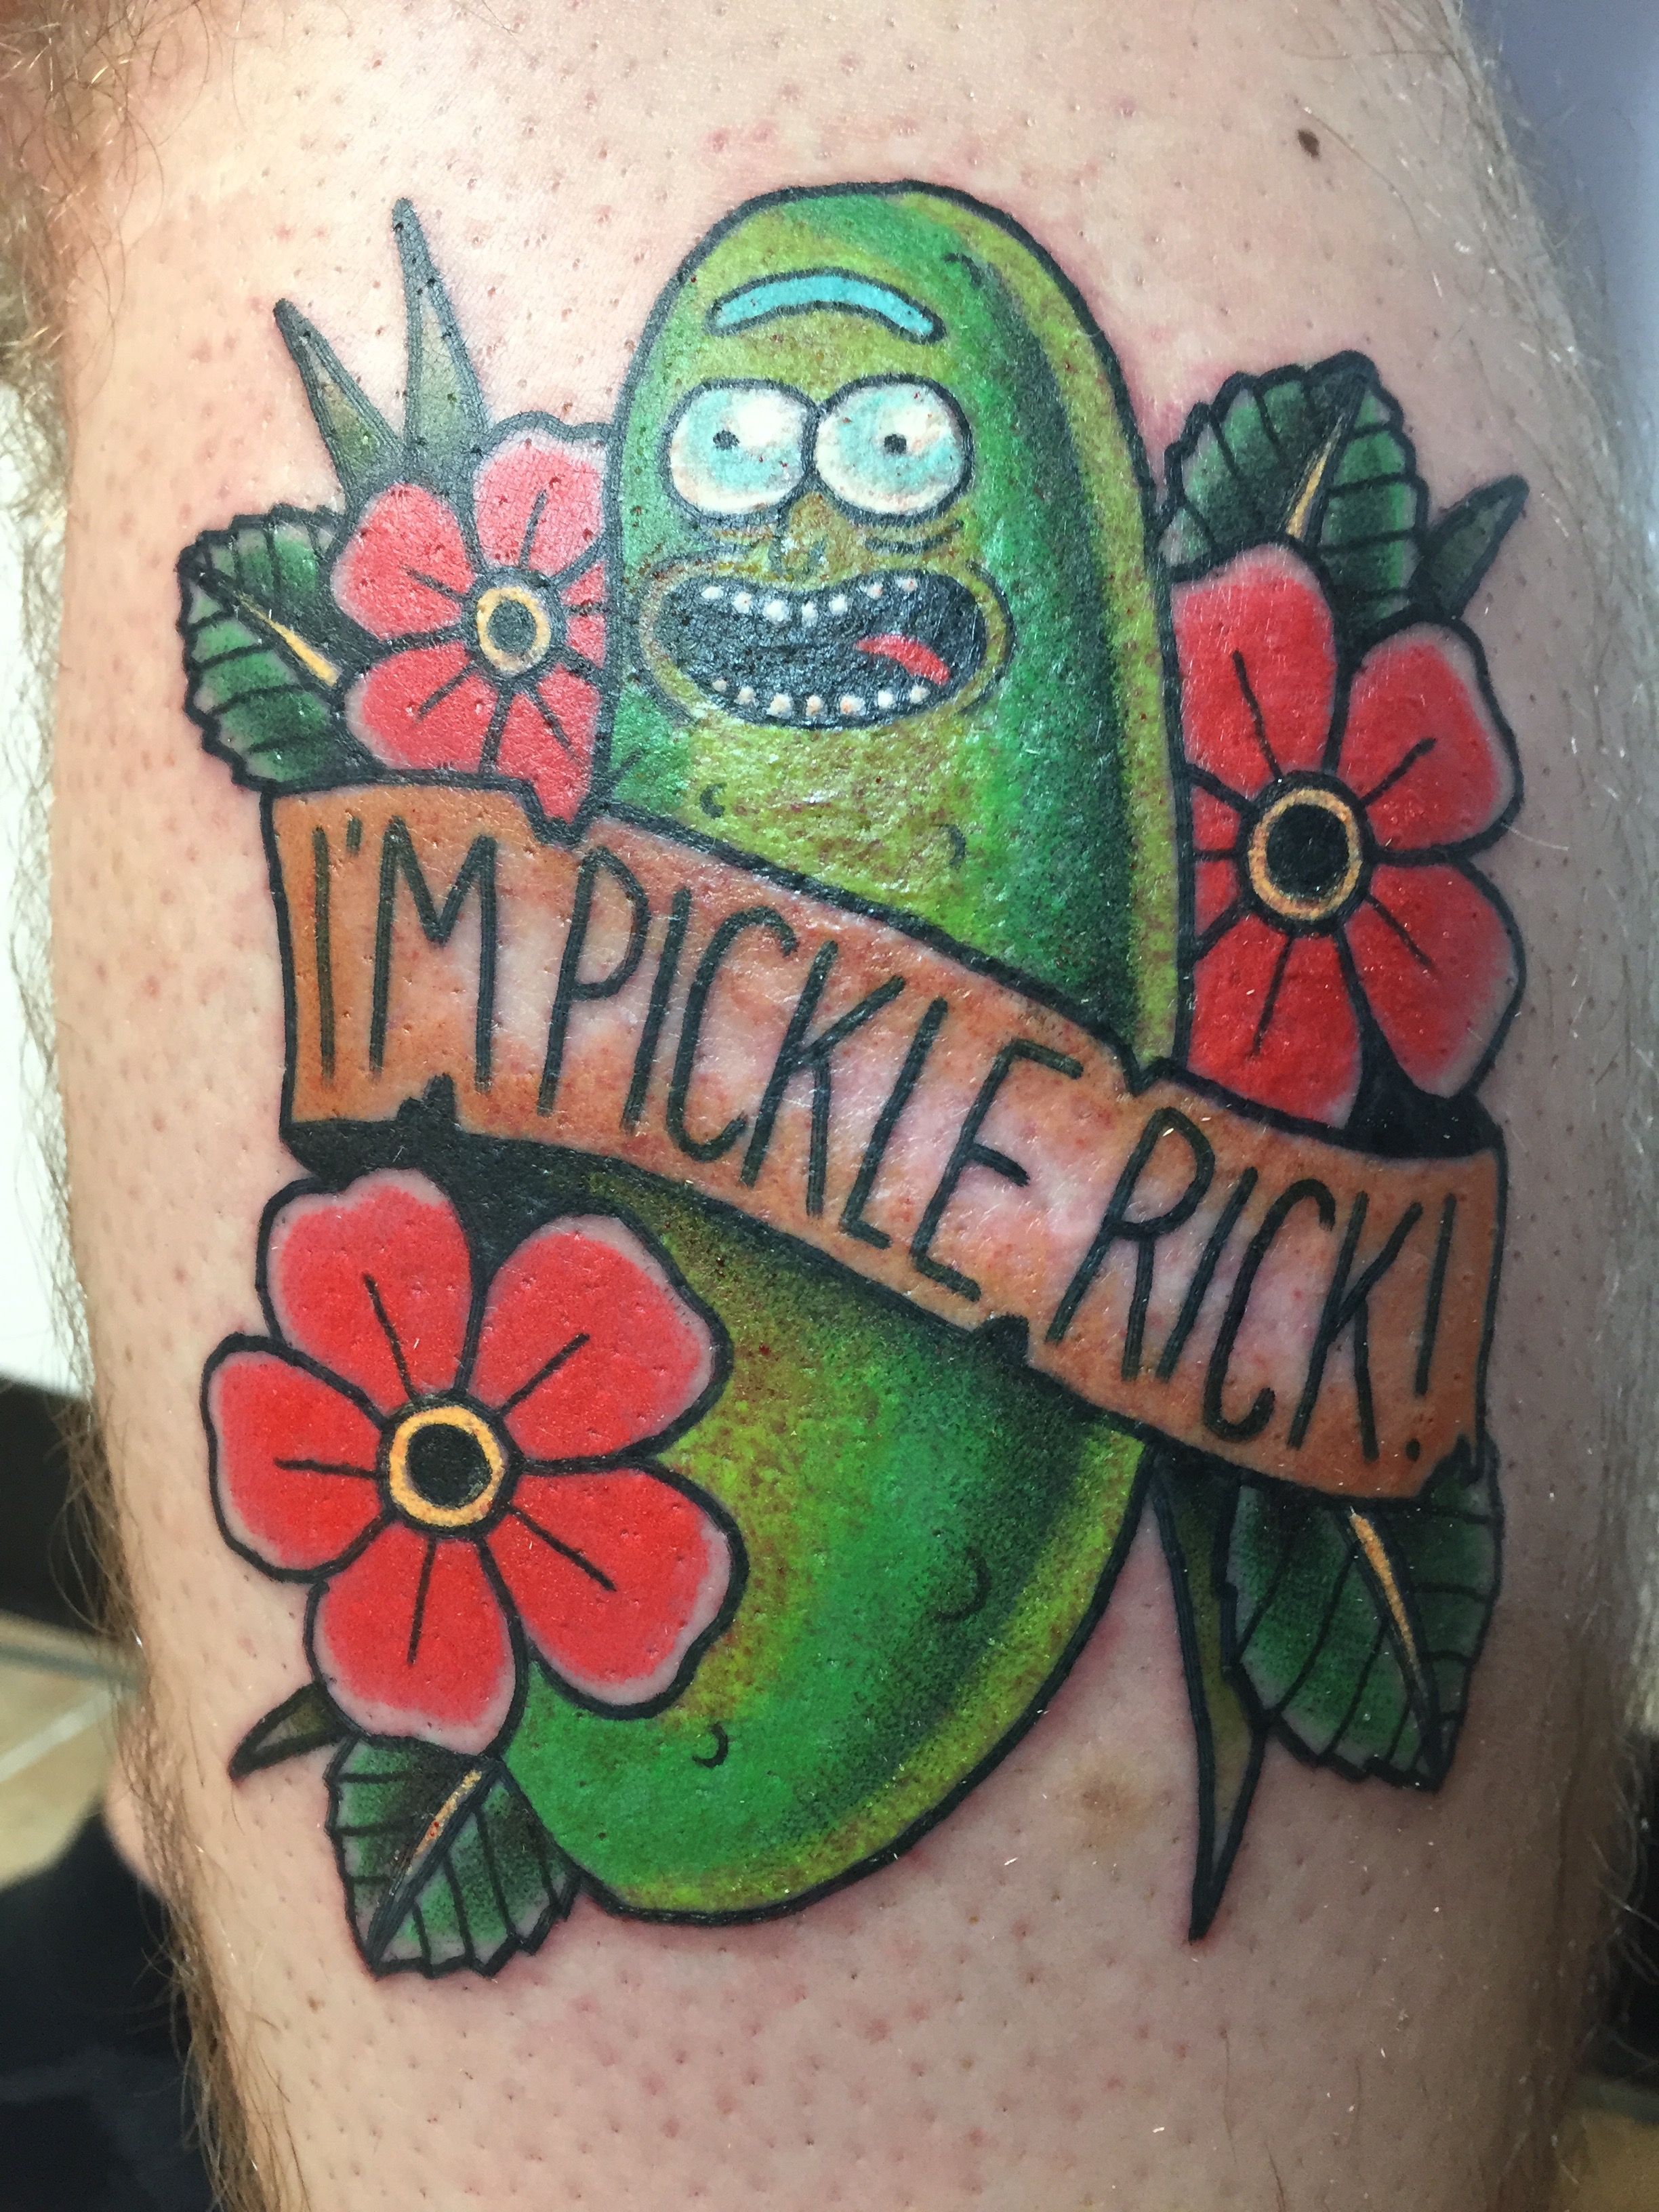 Teemu pickle rick tattoo